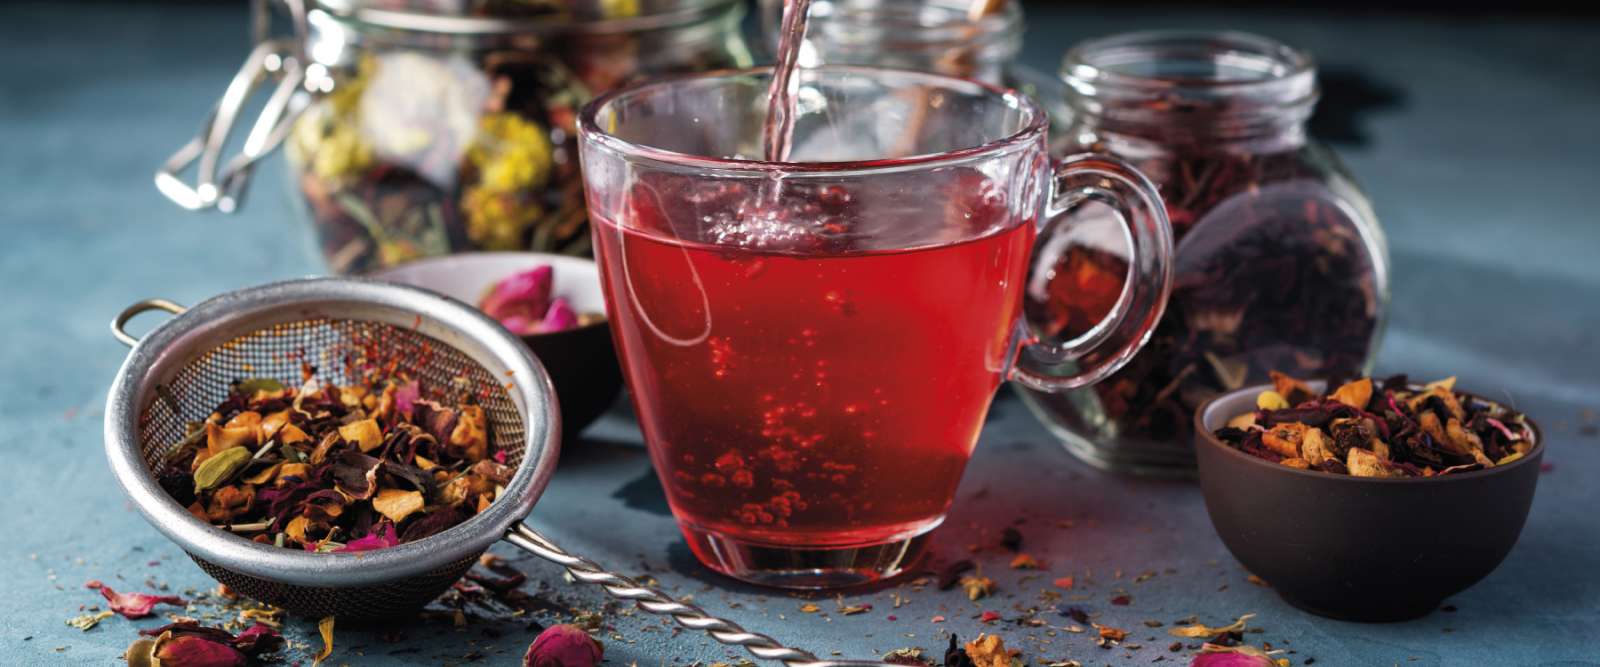 Früchte Tee | Tee | Rinama